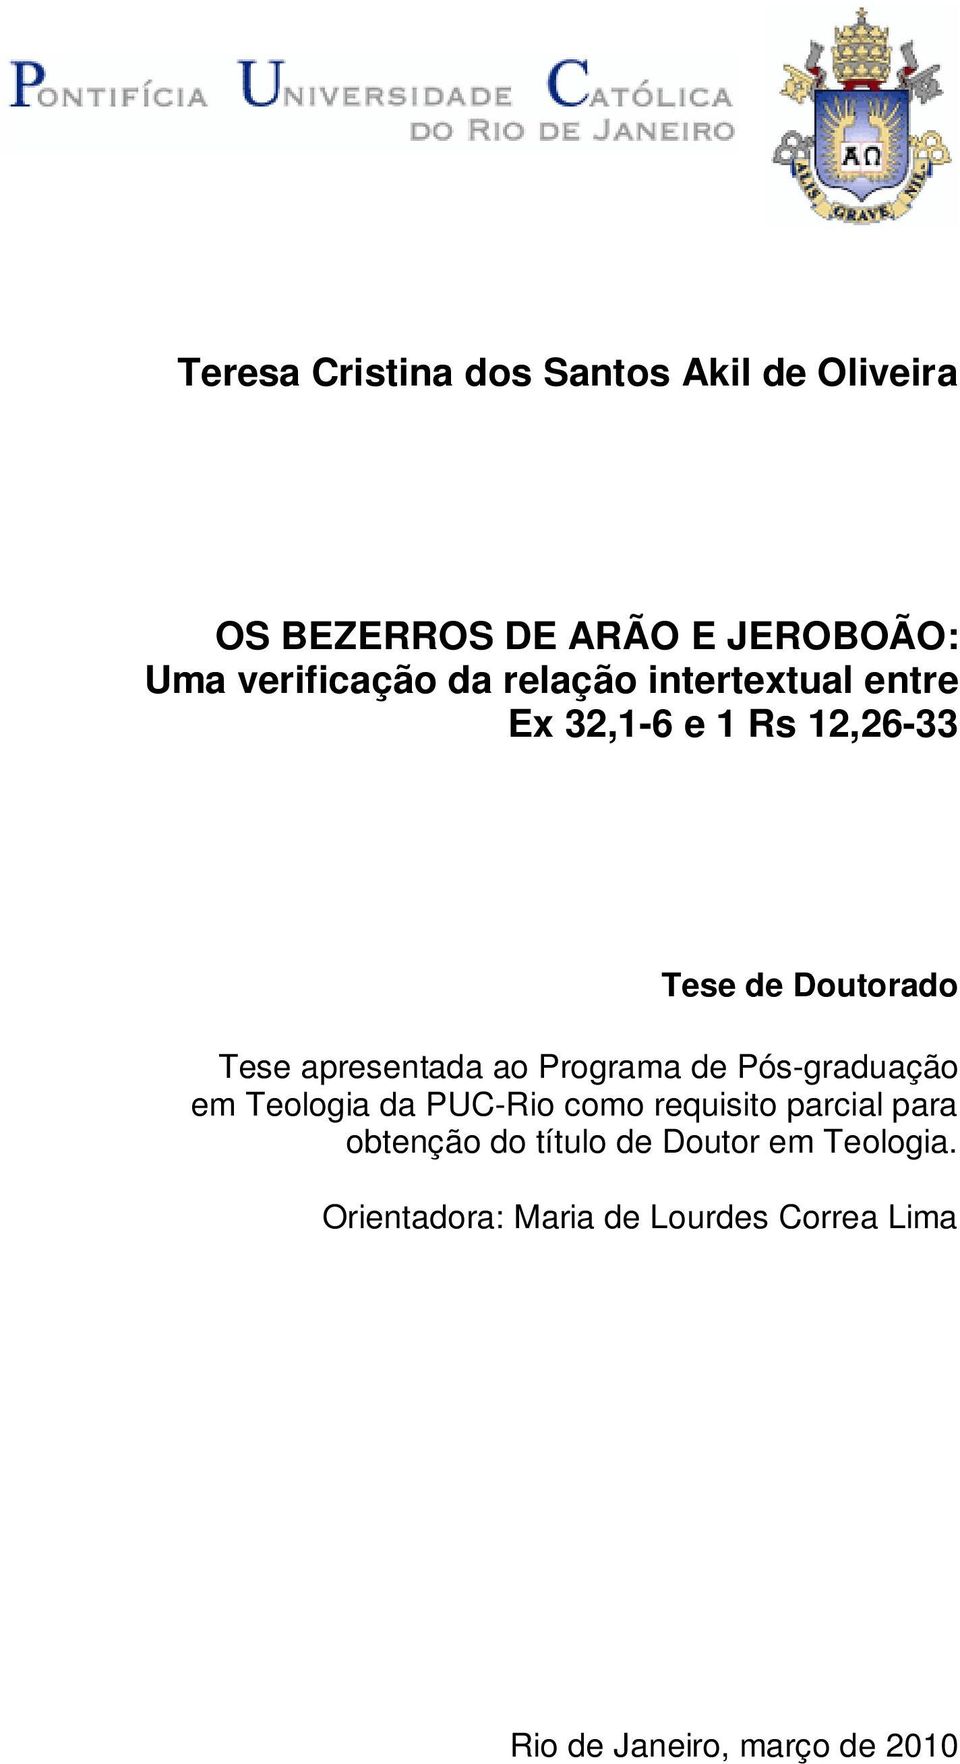 Programa de Pós-graduação em Teologia da PUC-Rio como requisito parcial para obtenção do